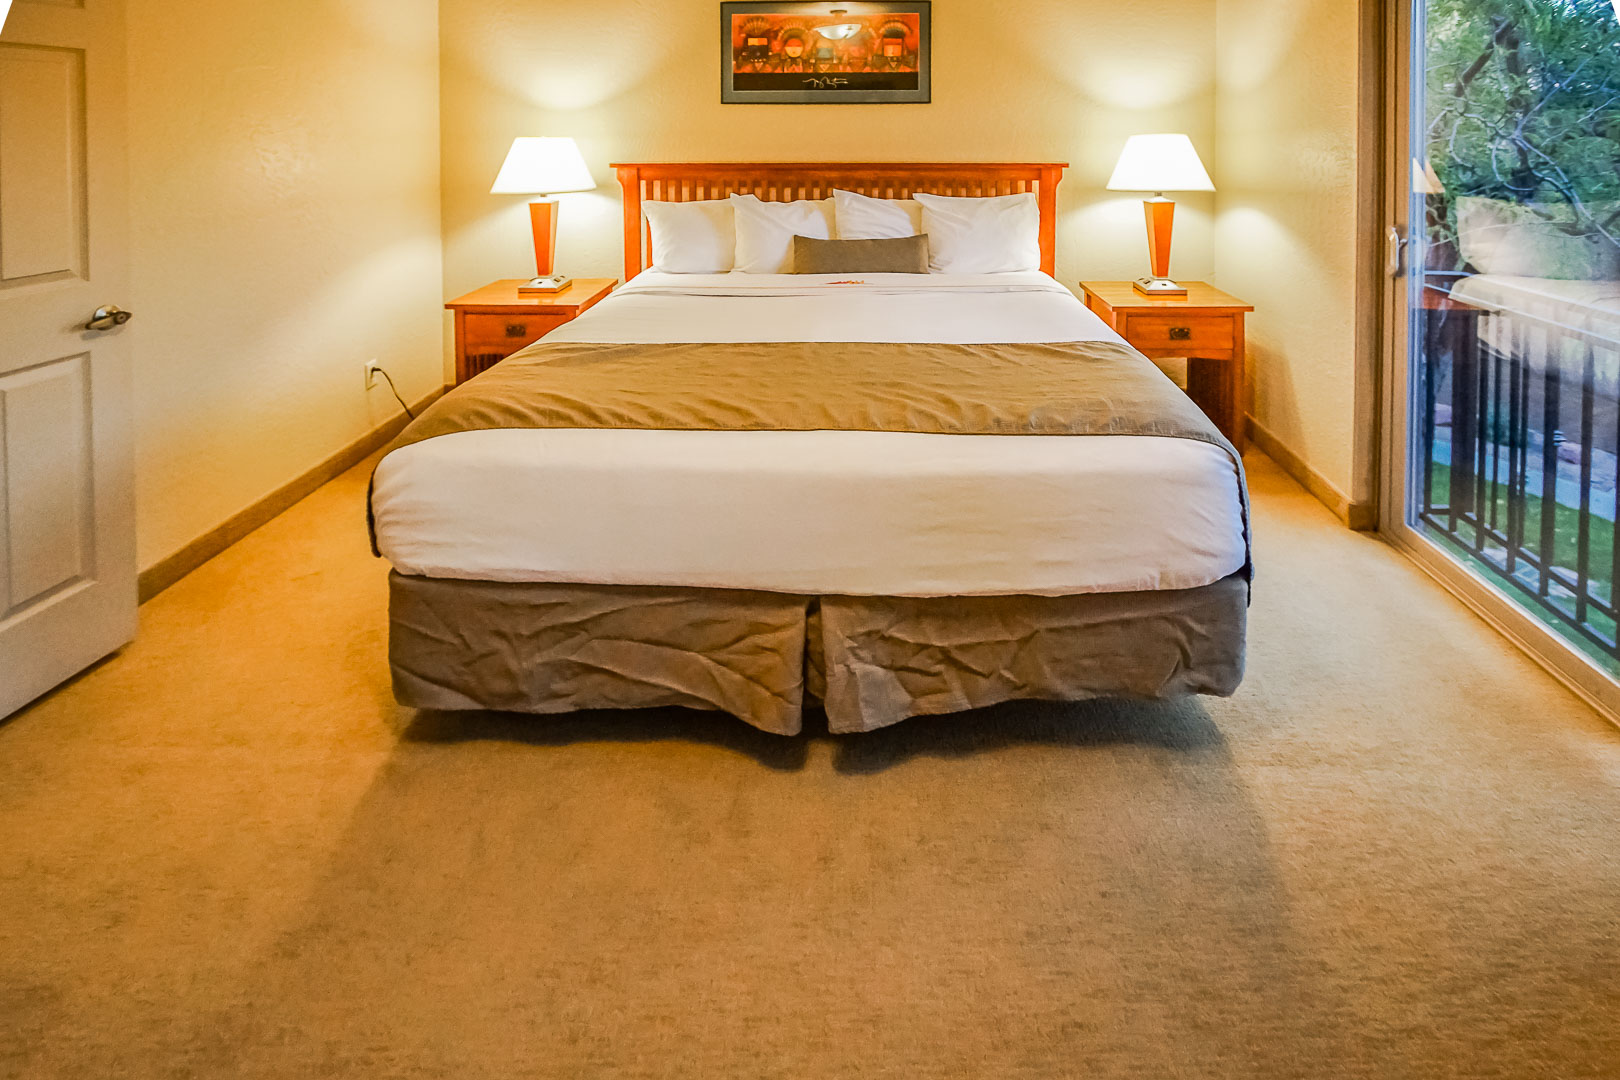 A master bedroom with a balcony at VRI's Villas of Sedona in Arizona.